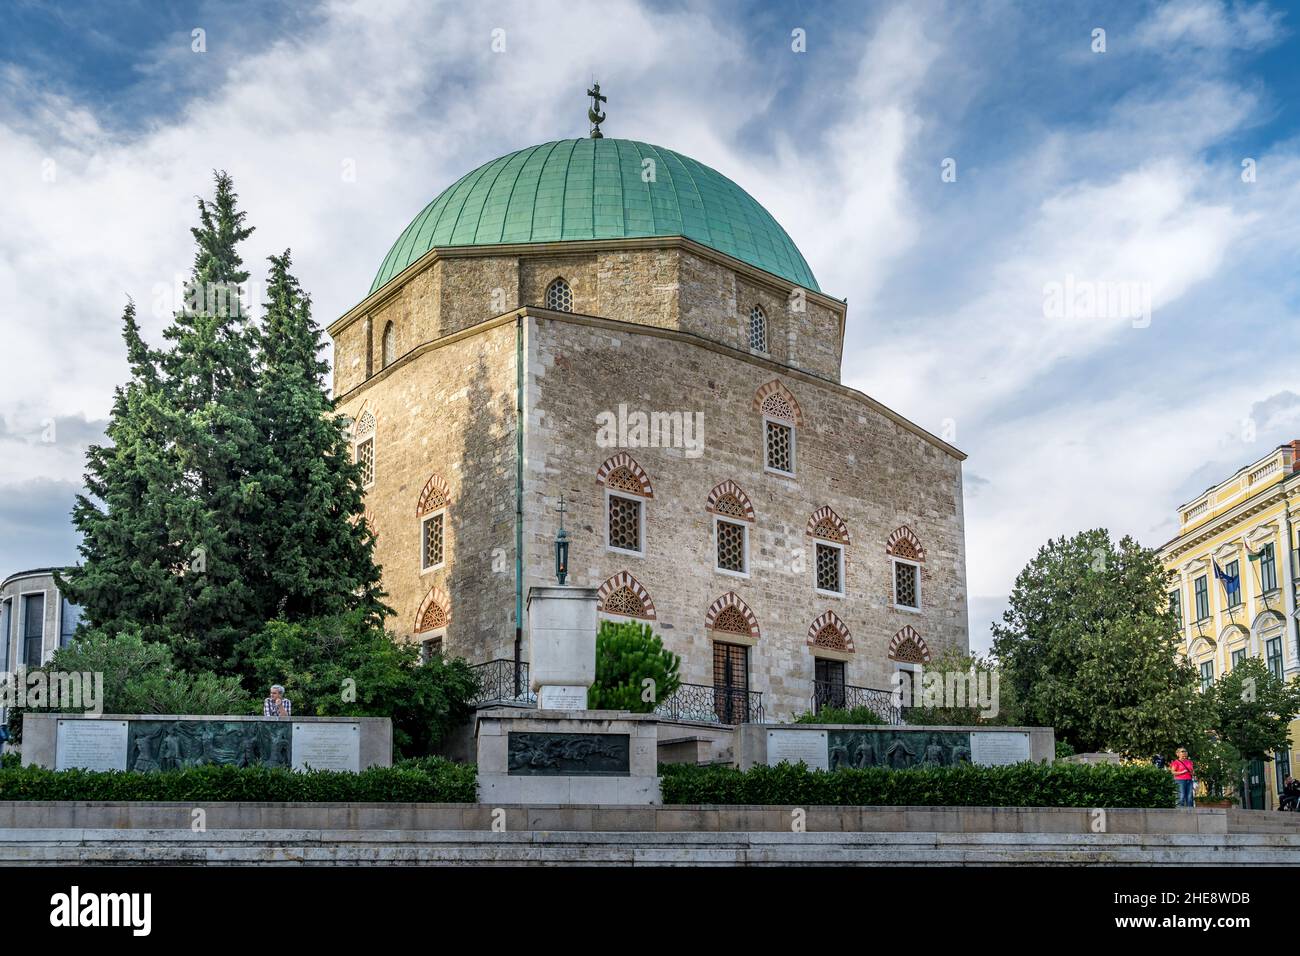 Vista della moschea di Pasha Qasim che ora serve come chiesa catolica nella città universitaria alla moda di Pecs nel sud dell'Ungheria Foto Stock